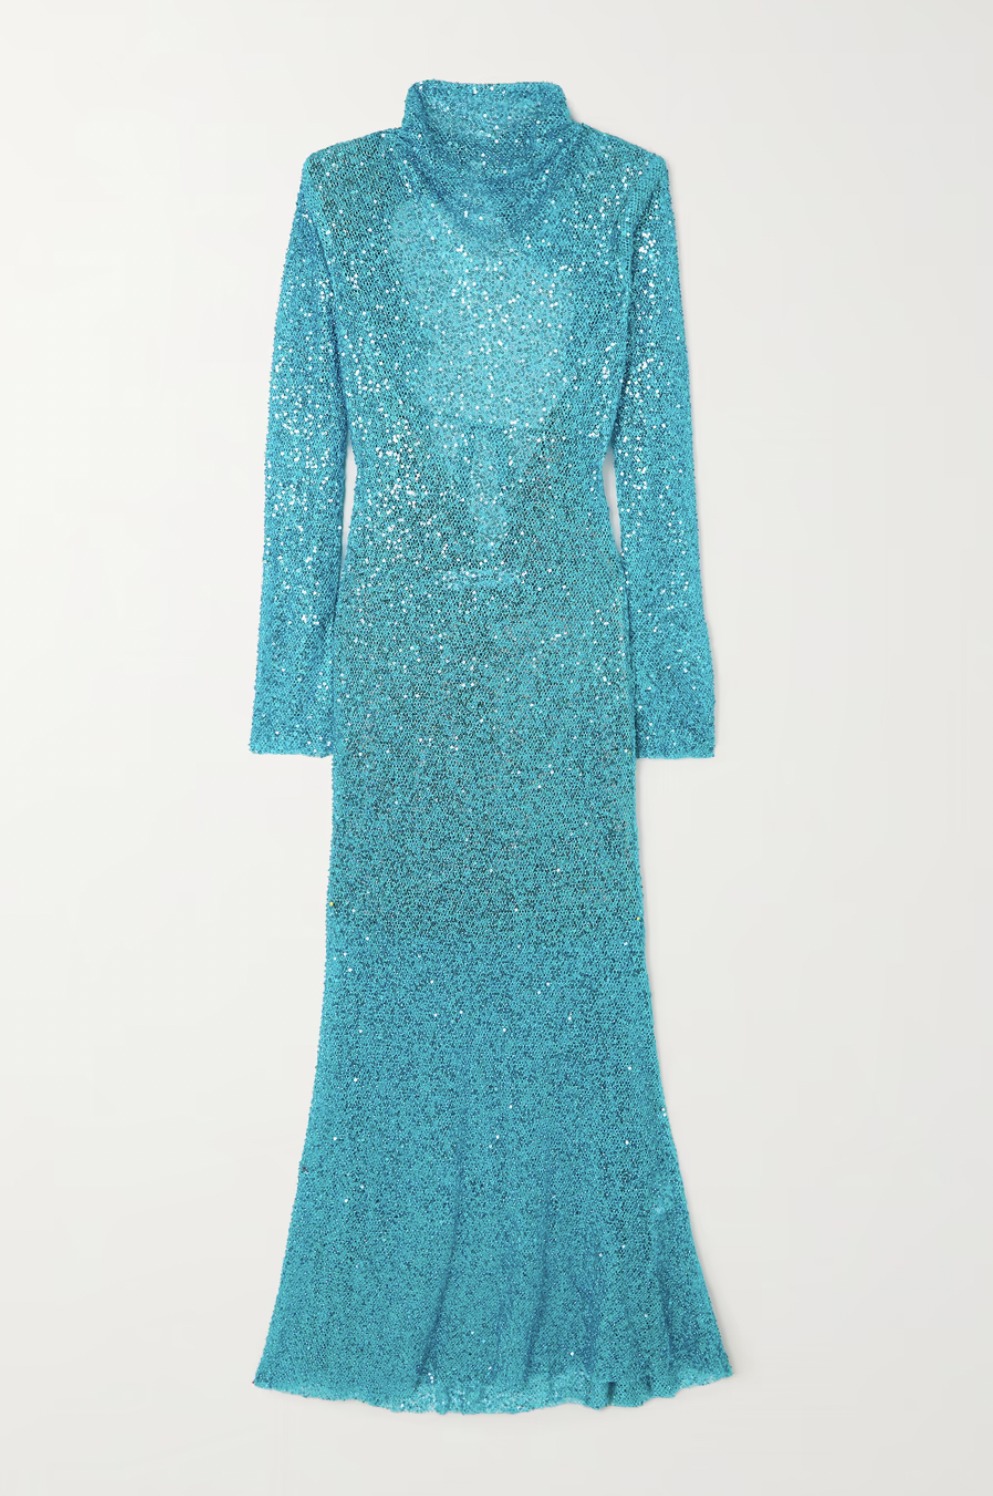 Где найти блестящее голубое платье как у Айи Шалкар?